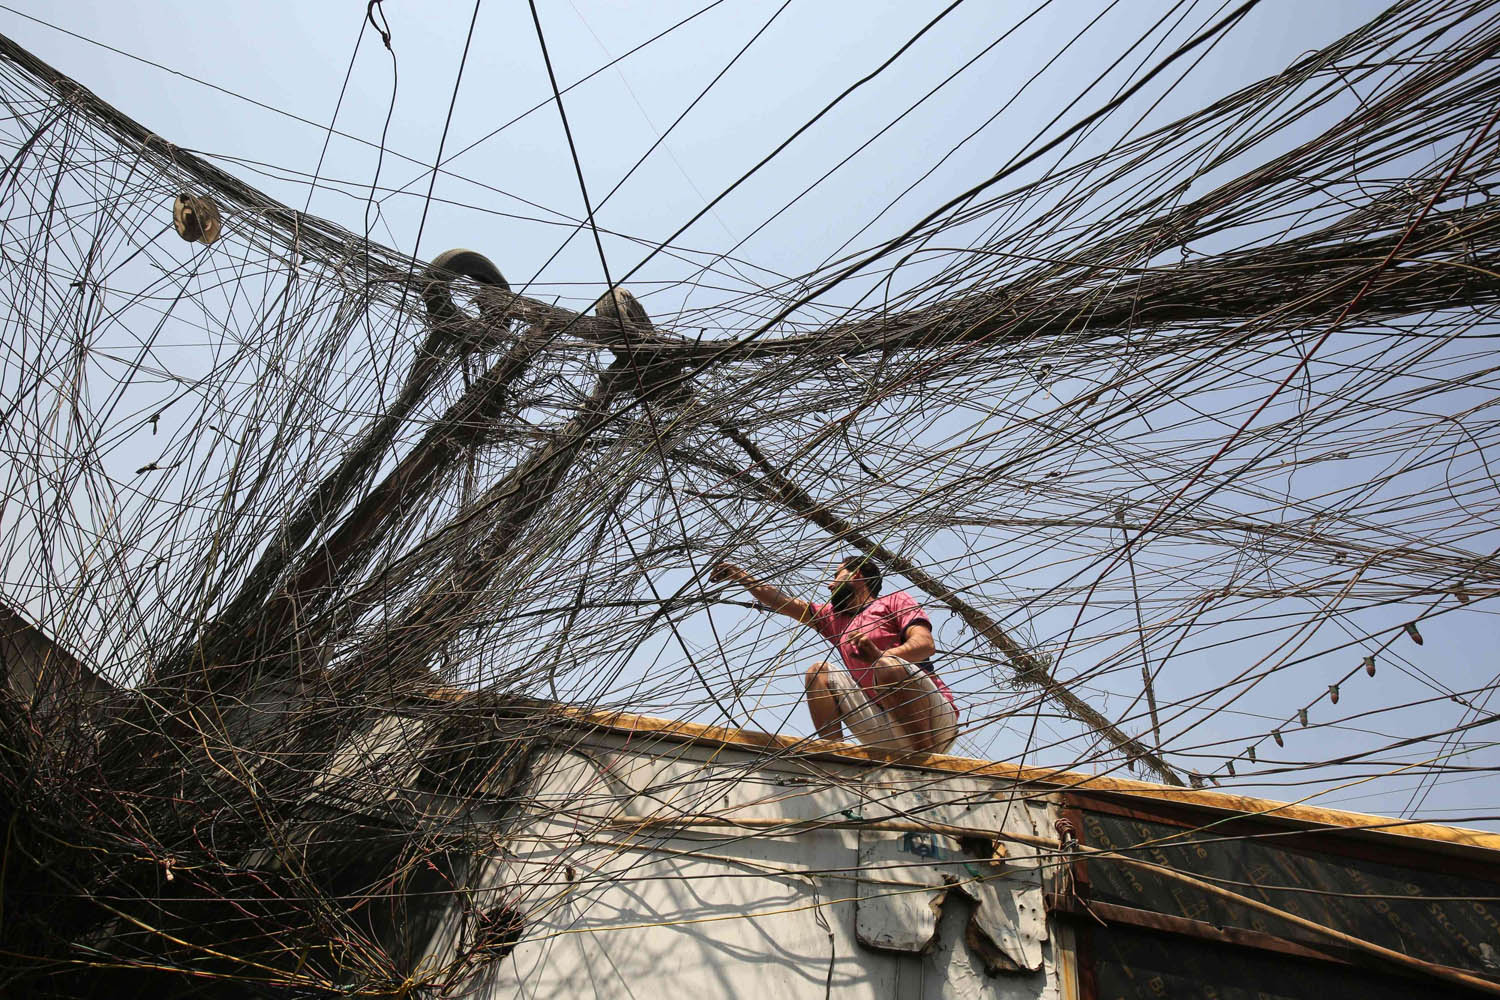 عراقي يحاول العثور على التوصيلة المناسبة من شبكة الأسلاك الخاصة التي تستبدل شبكة الكهرباء الوطنية